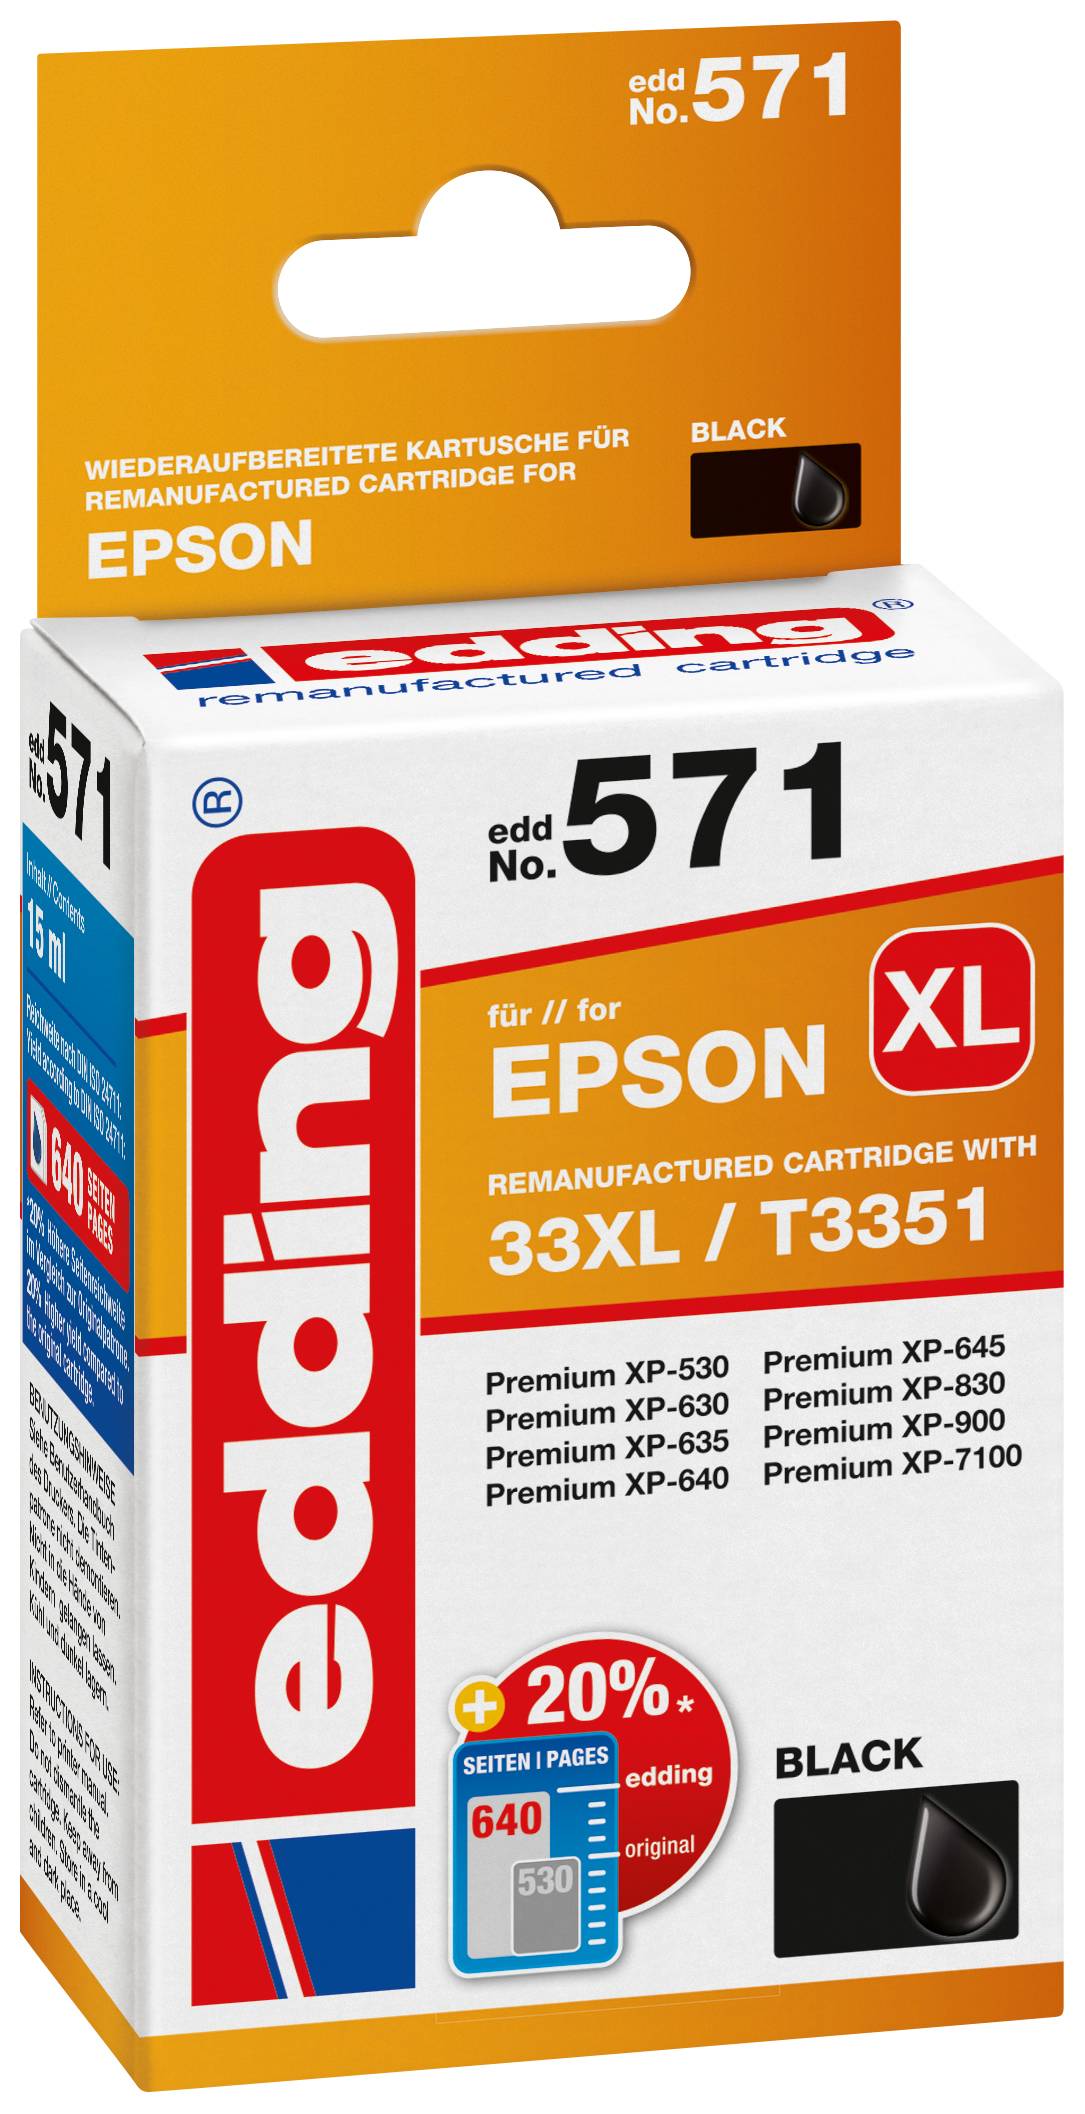 EDDING Tintenpatrone ersetzt Epson 33XL / T3351 Kompatibel einzeln Schwarz EDD-571 18-571